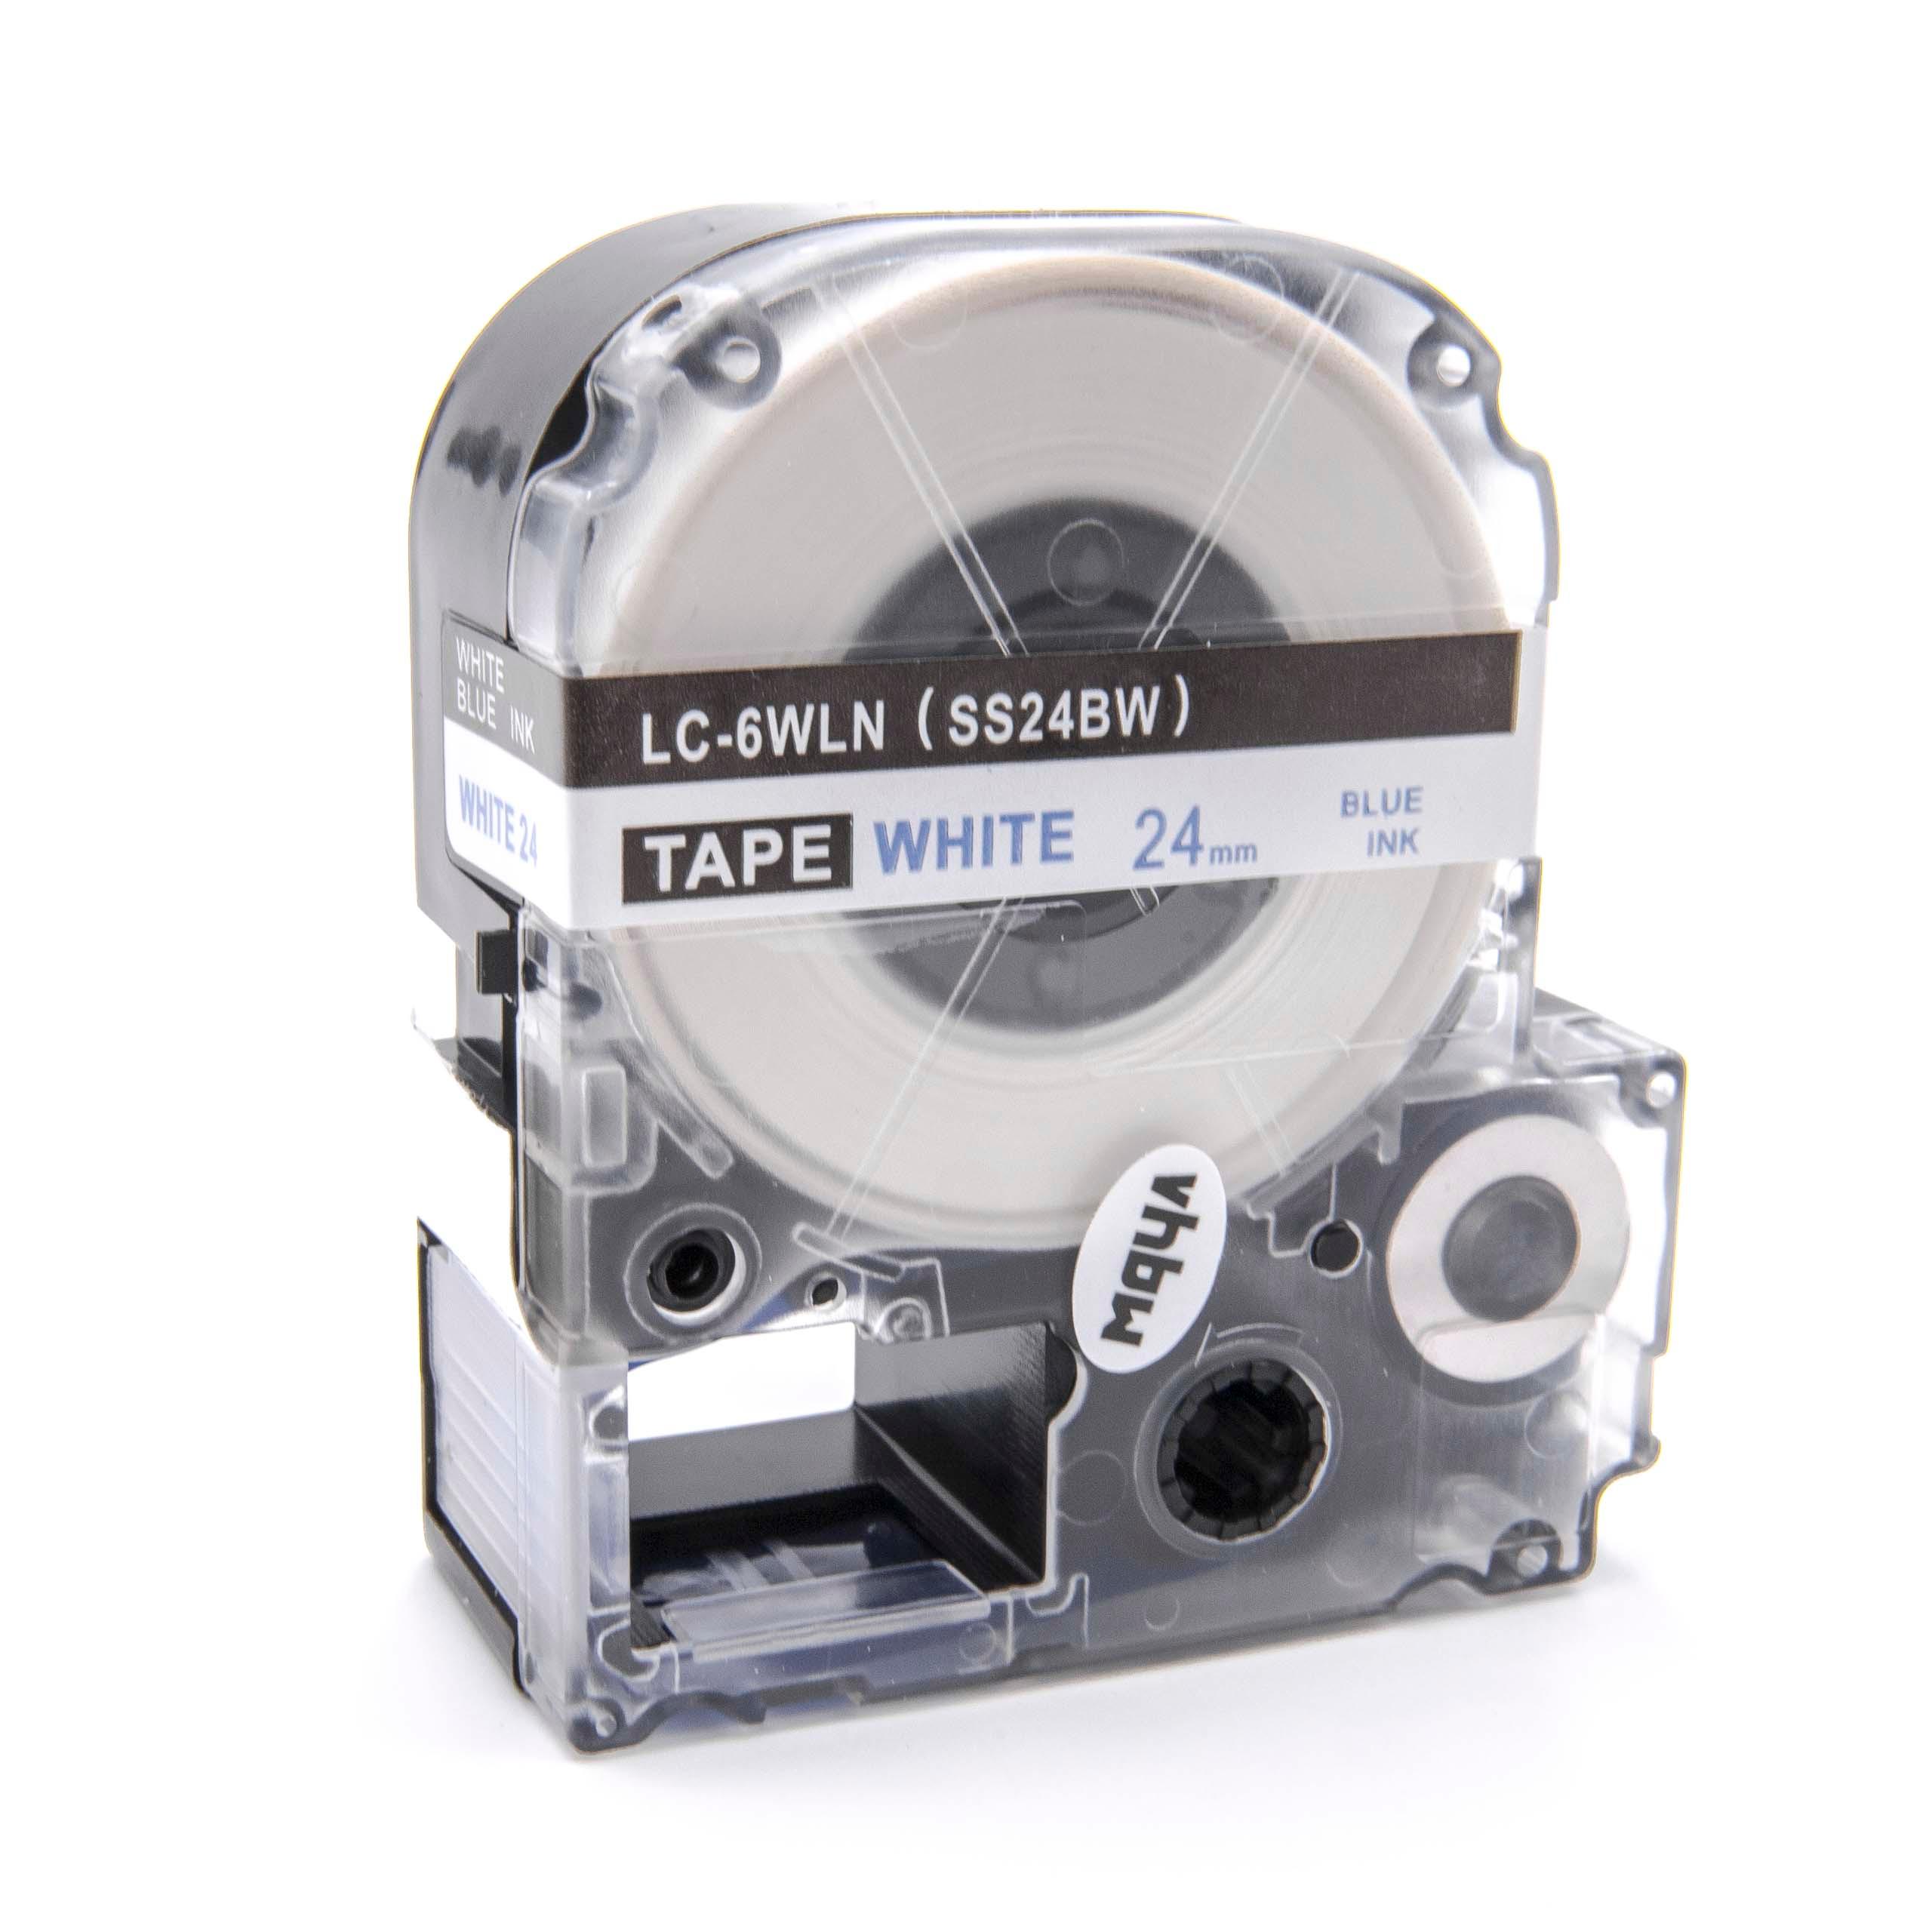 Cassetta nastro sostituisce Epson LC-6WLN per etichettatrice Epson 24mm blu su bianco